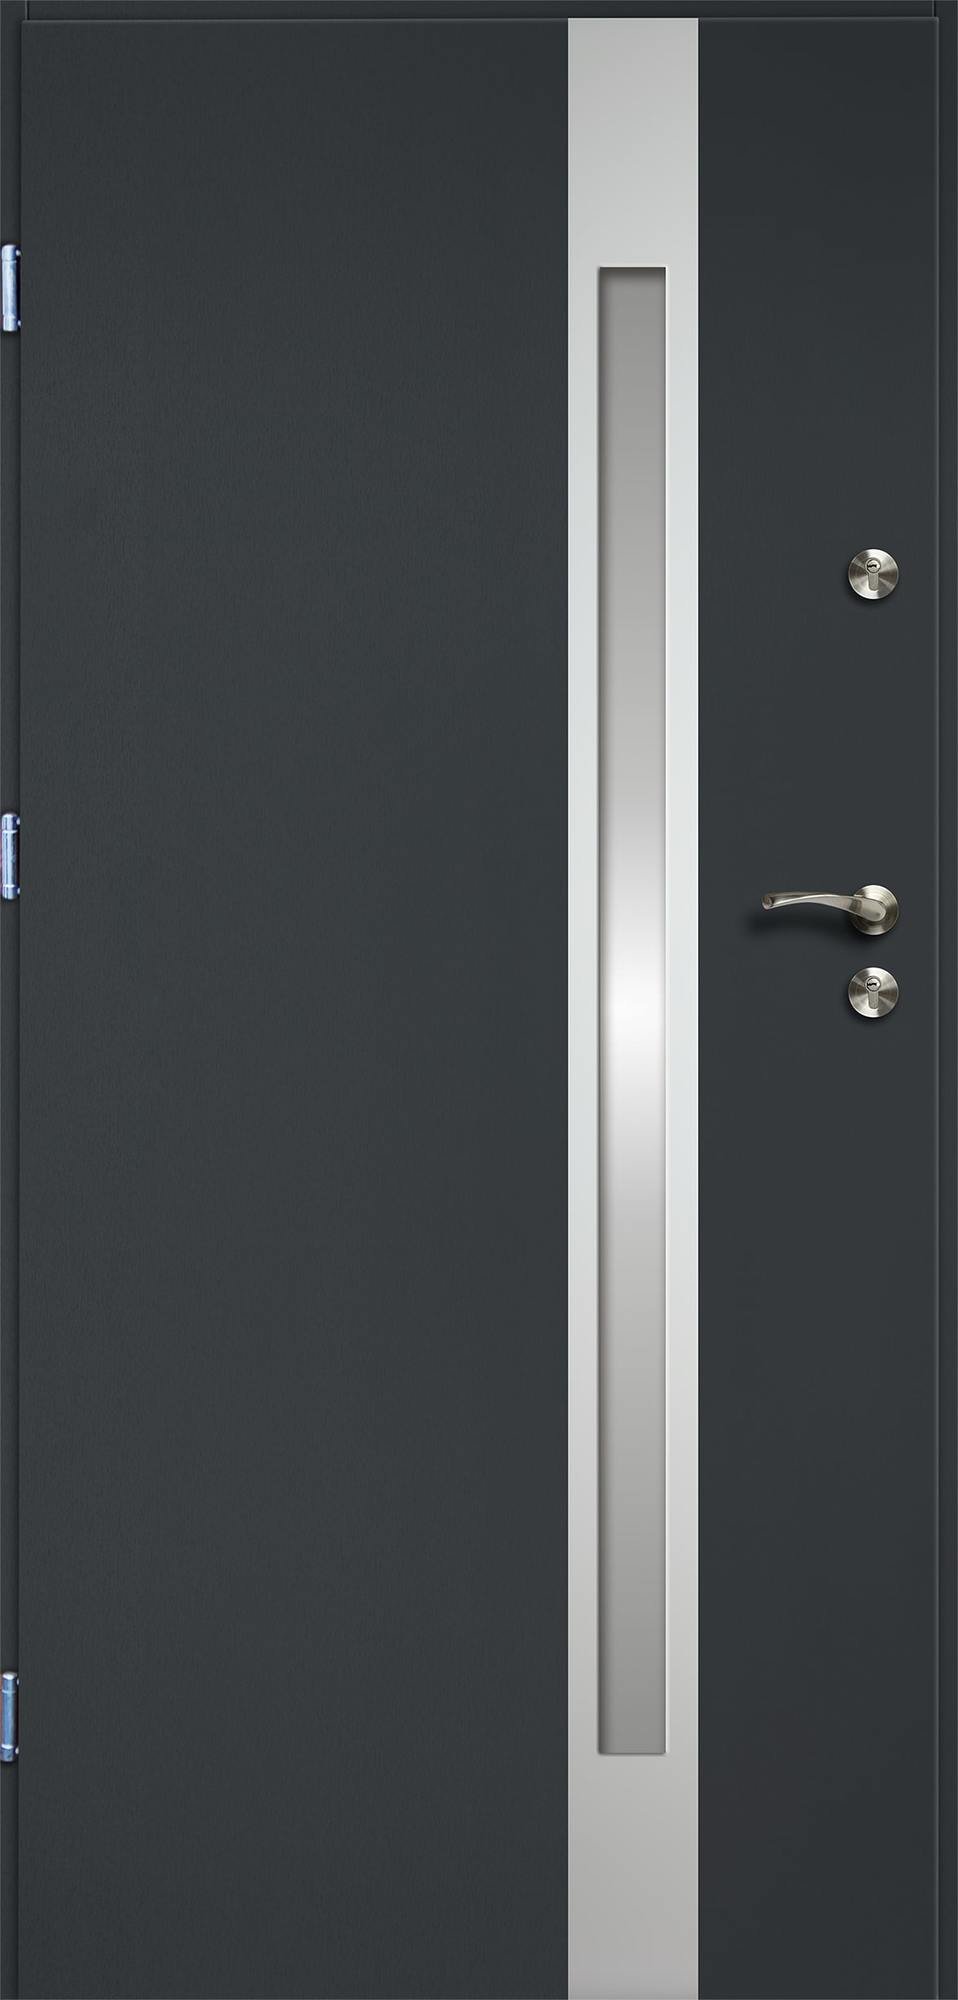 Lauko durys RADEX VERTE II, antracito sp., 895 x 2063 mm, kairė - 1